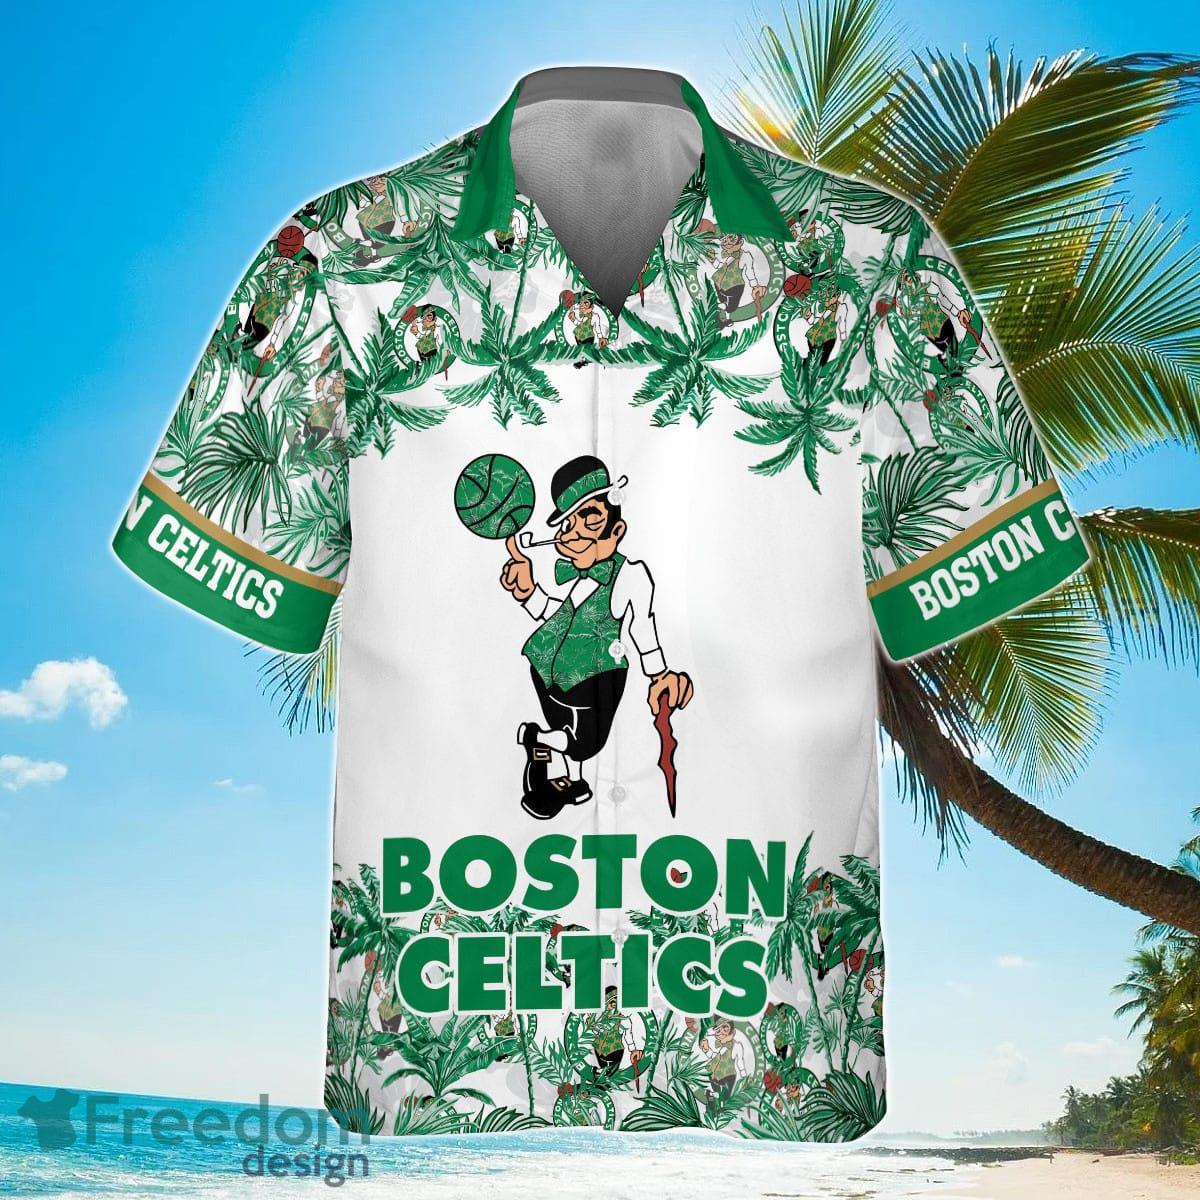 Boston Celtics Celtics Basketball Gifts for Men Christmas 